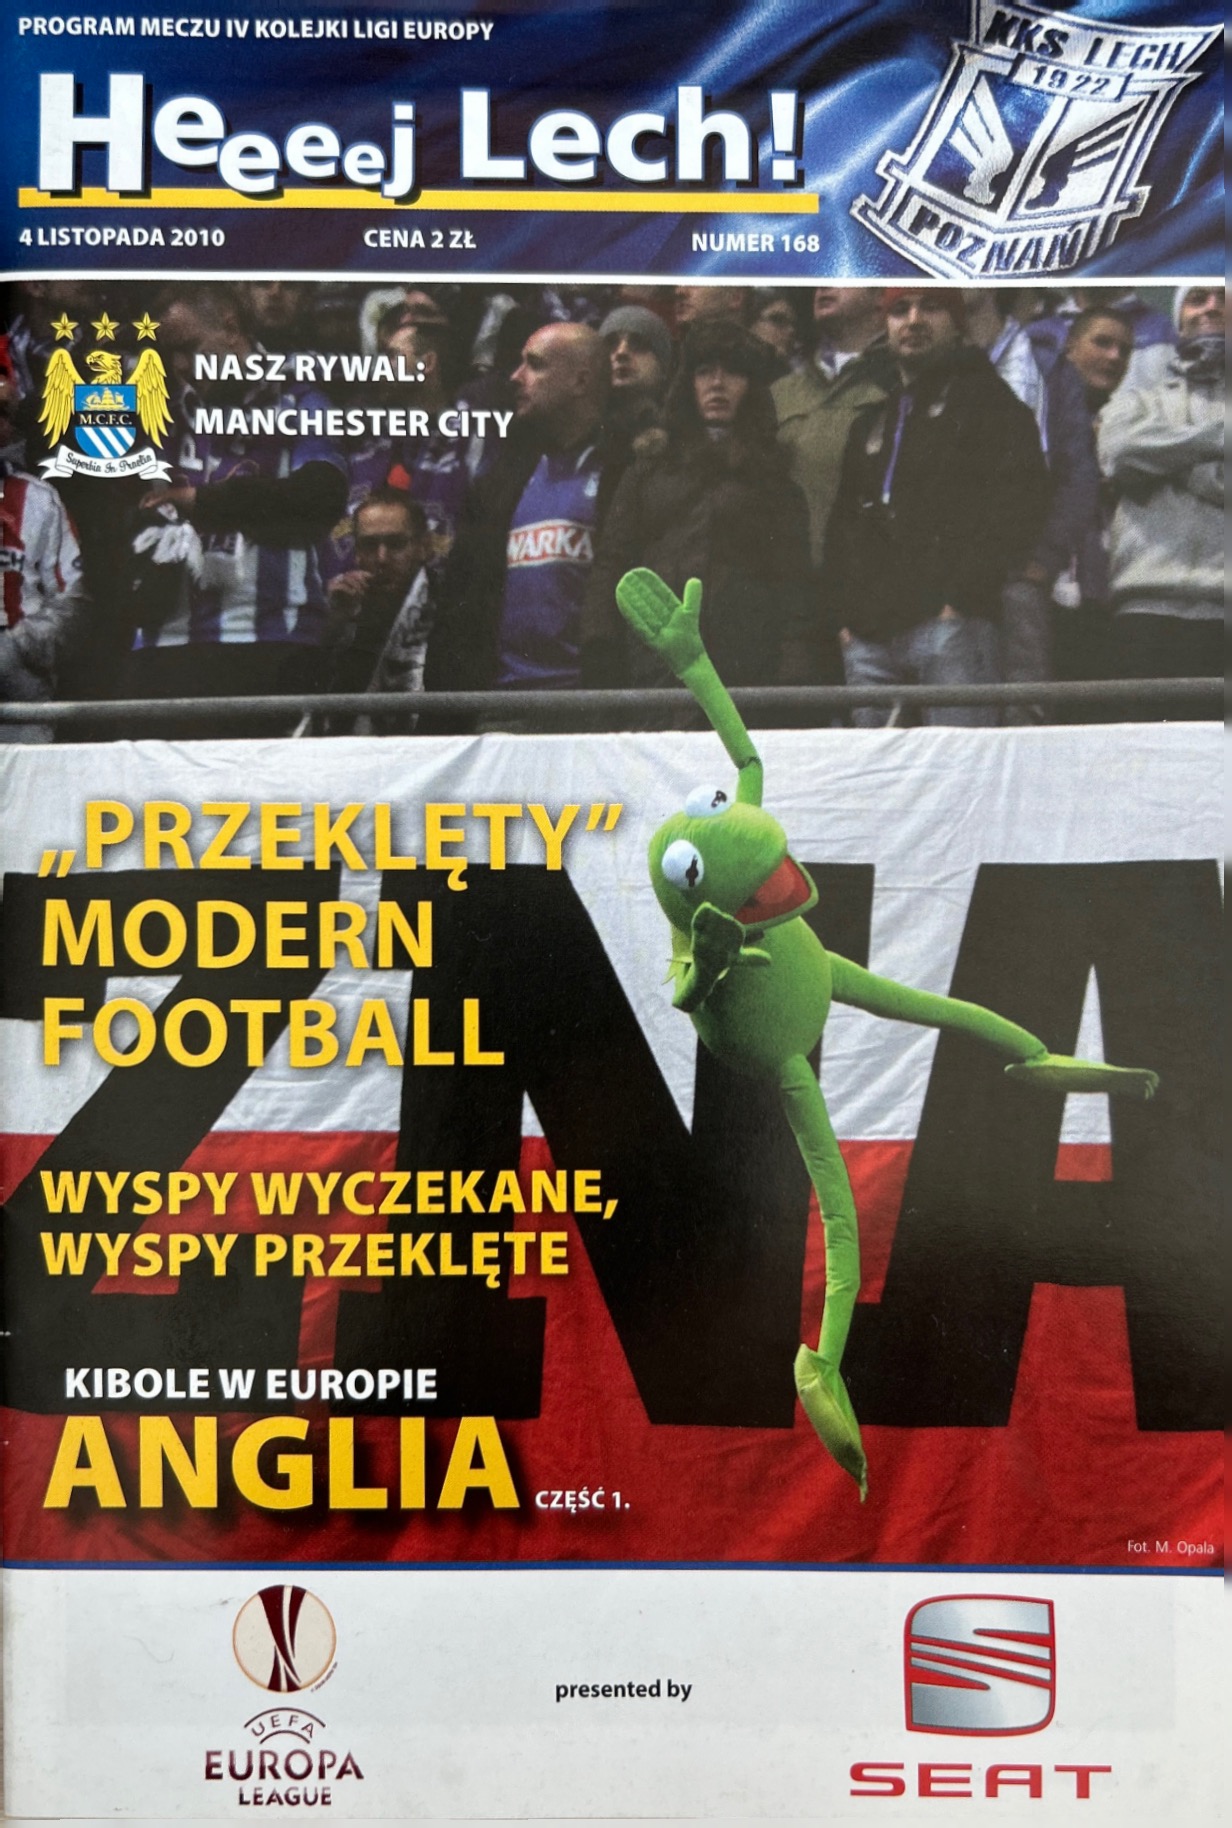 Program meczowy Lech Poznań - Manchester City 3:1 (04.11.2010)